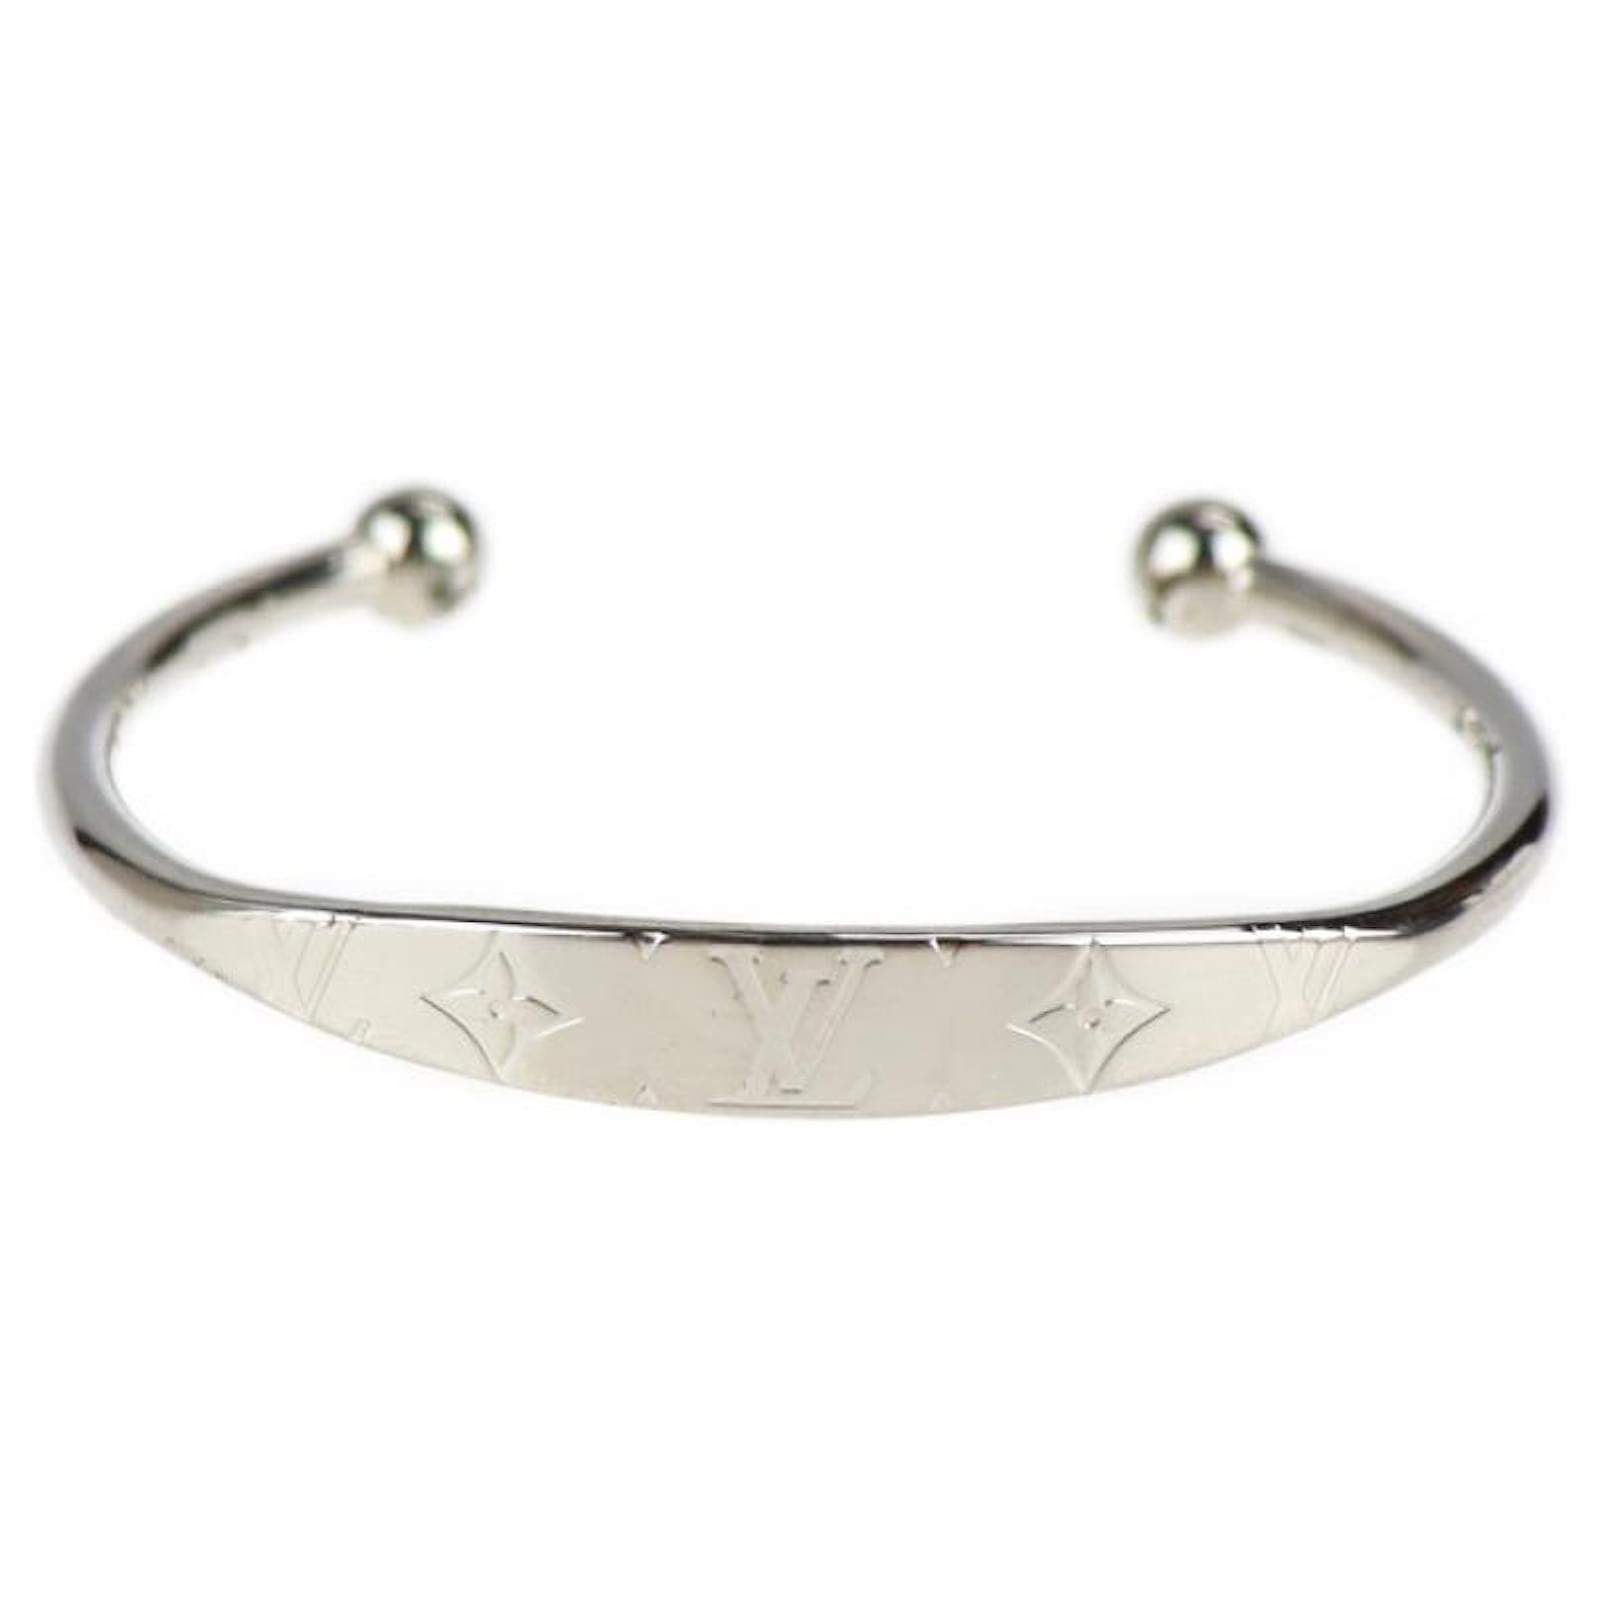 Louis Vuitton Silver Metal Monogram Jonc Bracelet